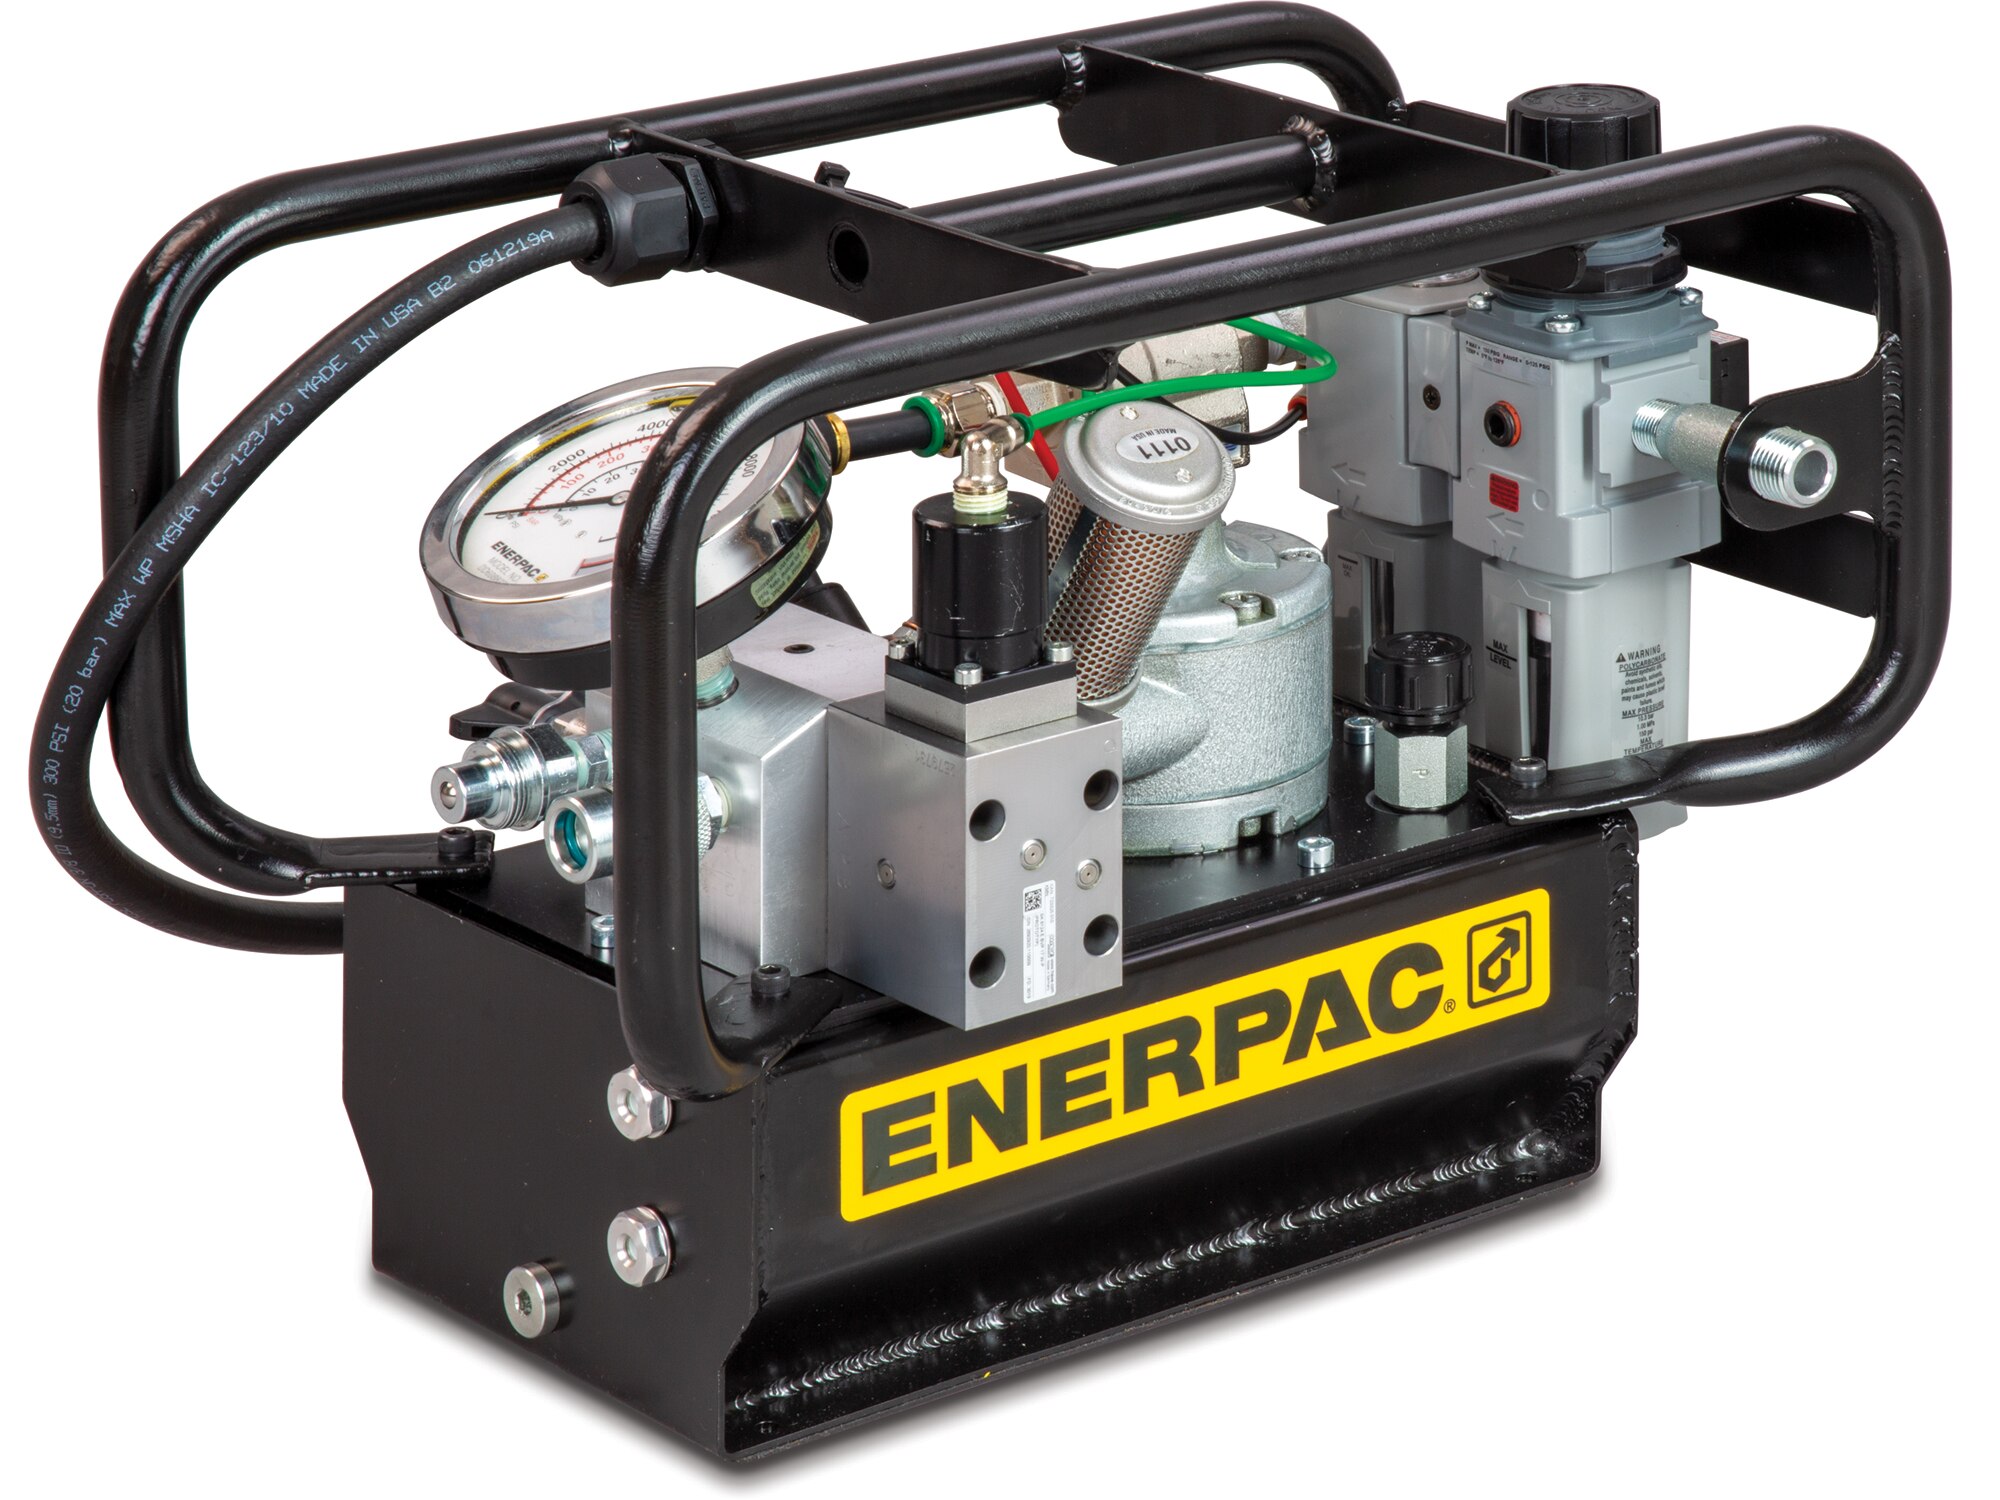 Enerpac Electric Hydraulic Torque Wrench Pumps - Buffalo Hydraulic